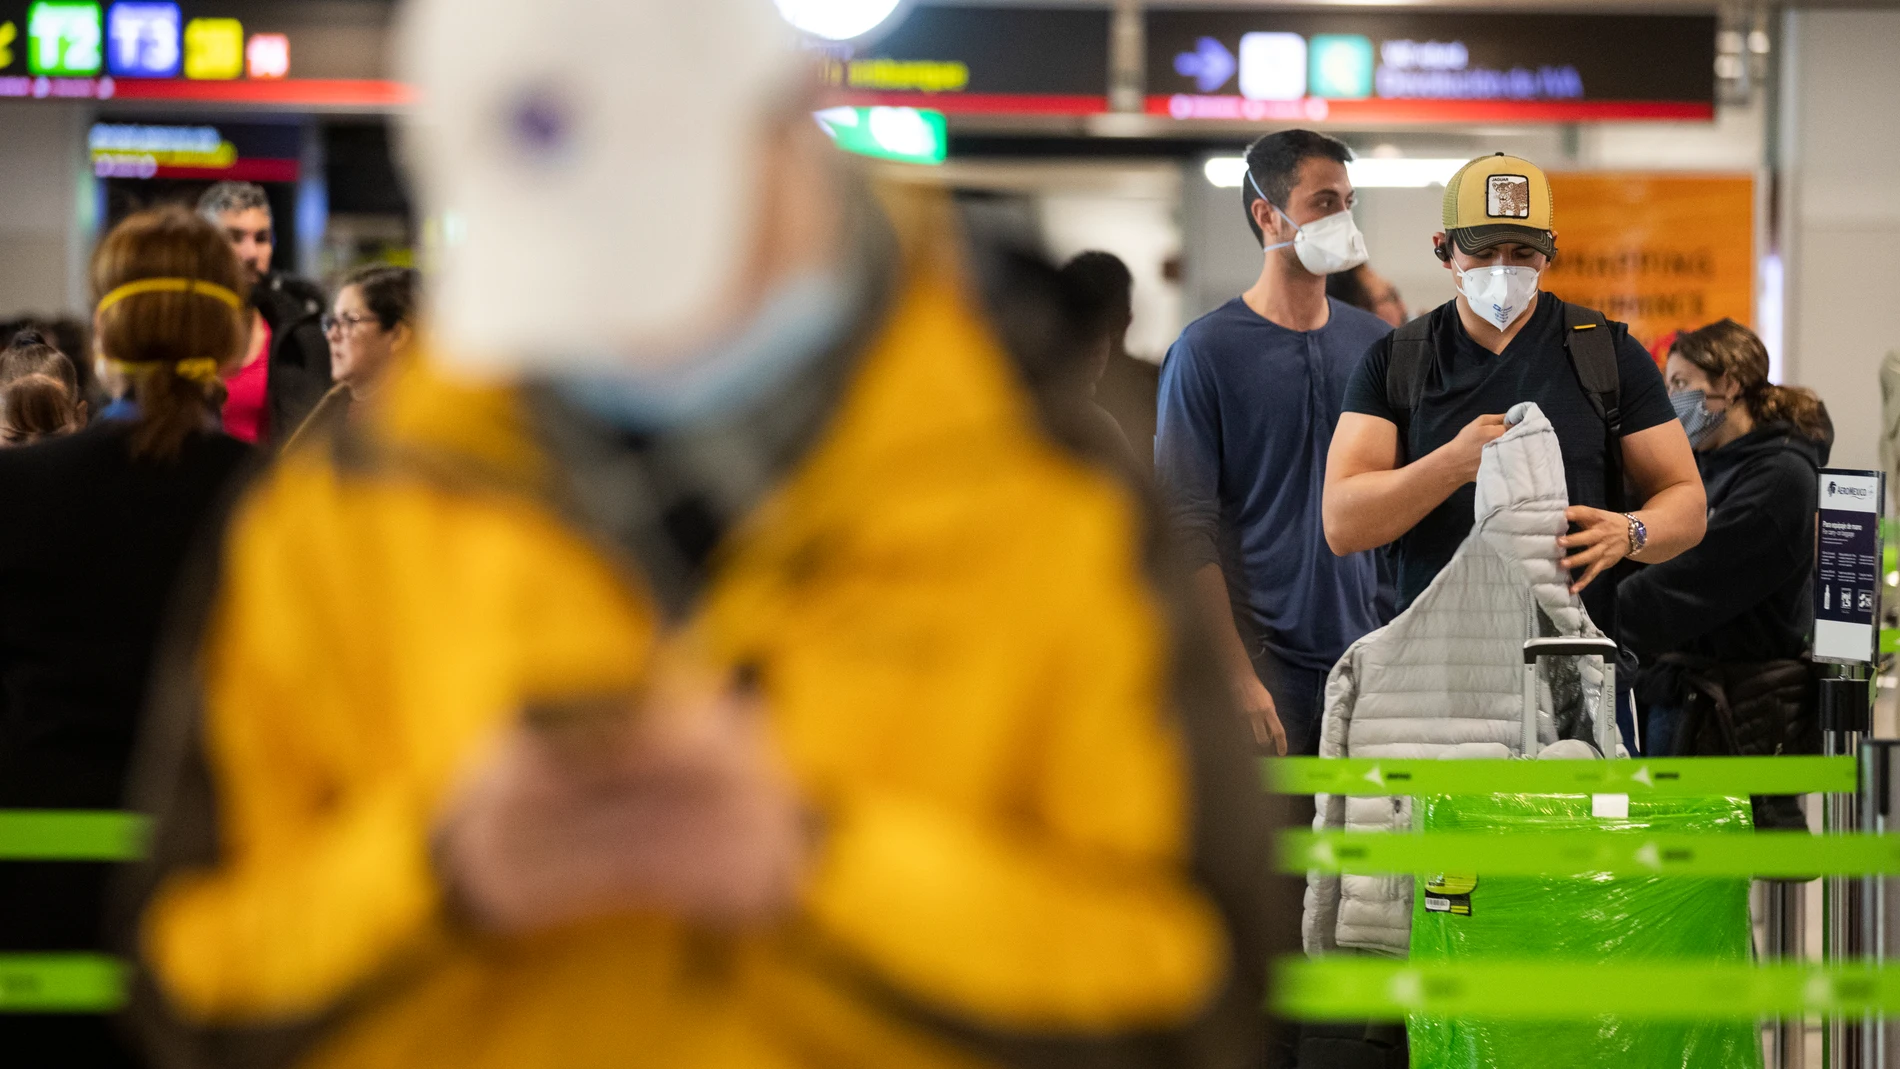 Imagen del Aeropuerto Adolfo Suarez Barajas en la terminal 1 con viajeros y personal protegidos por mascarillas. Foto Jesús G Feria